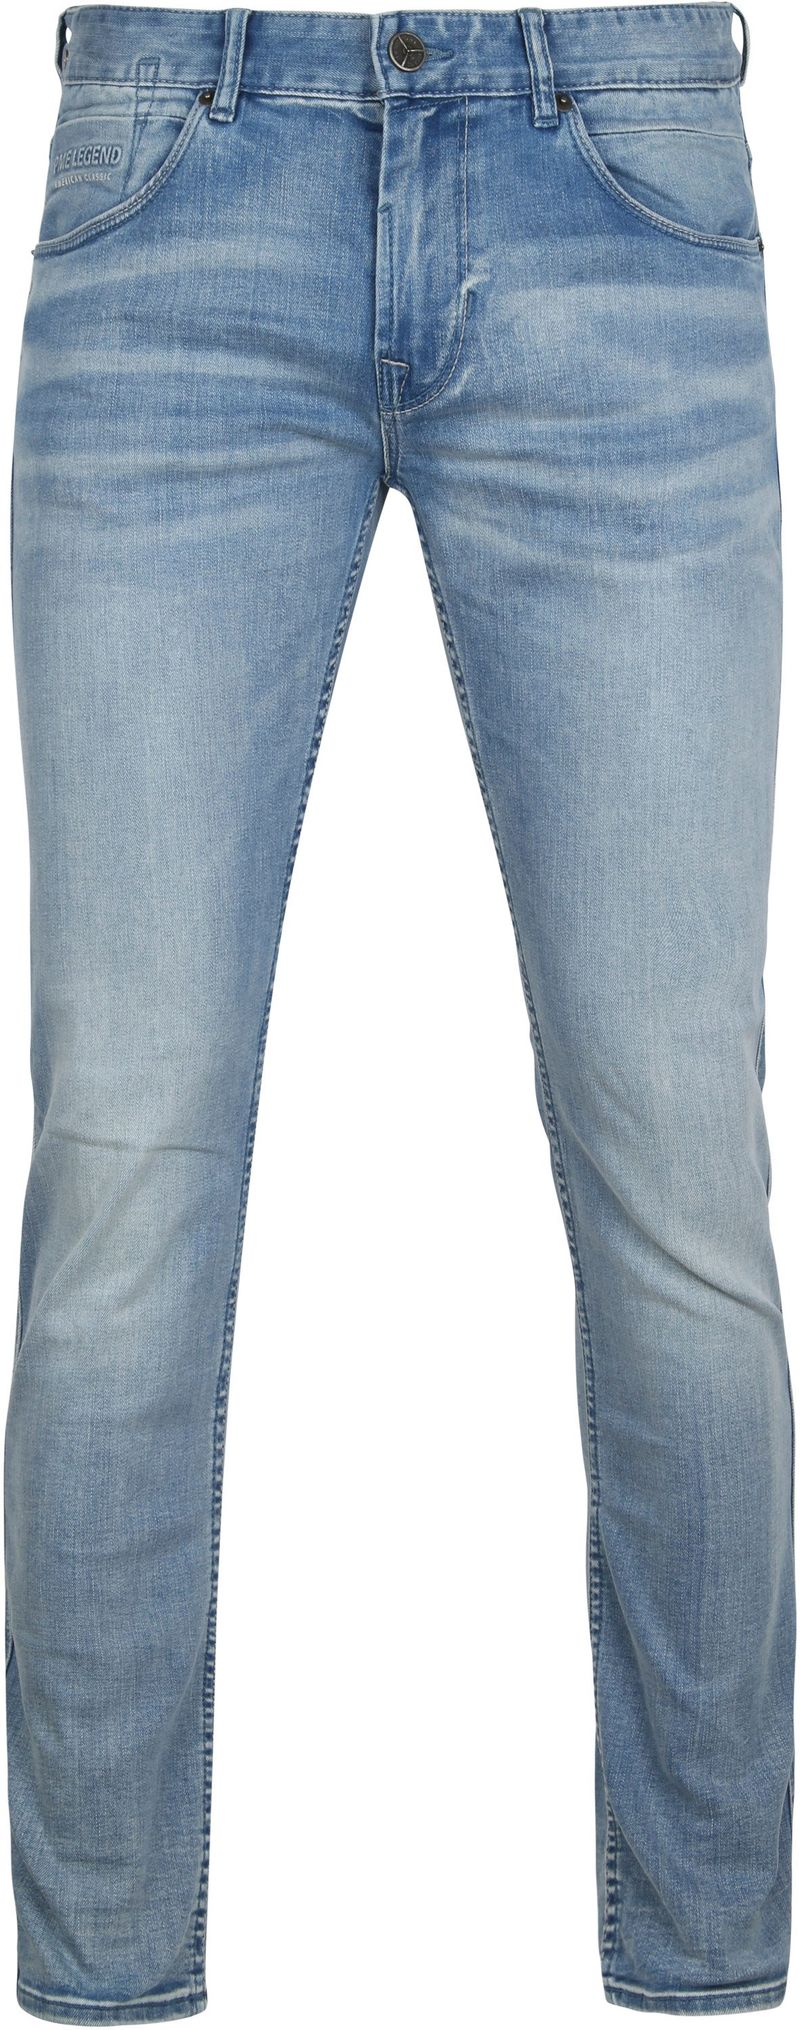 PME Legend Nightflight Jeans Blau - Größe W 34 - L 36 günstig online kaufen